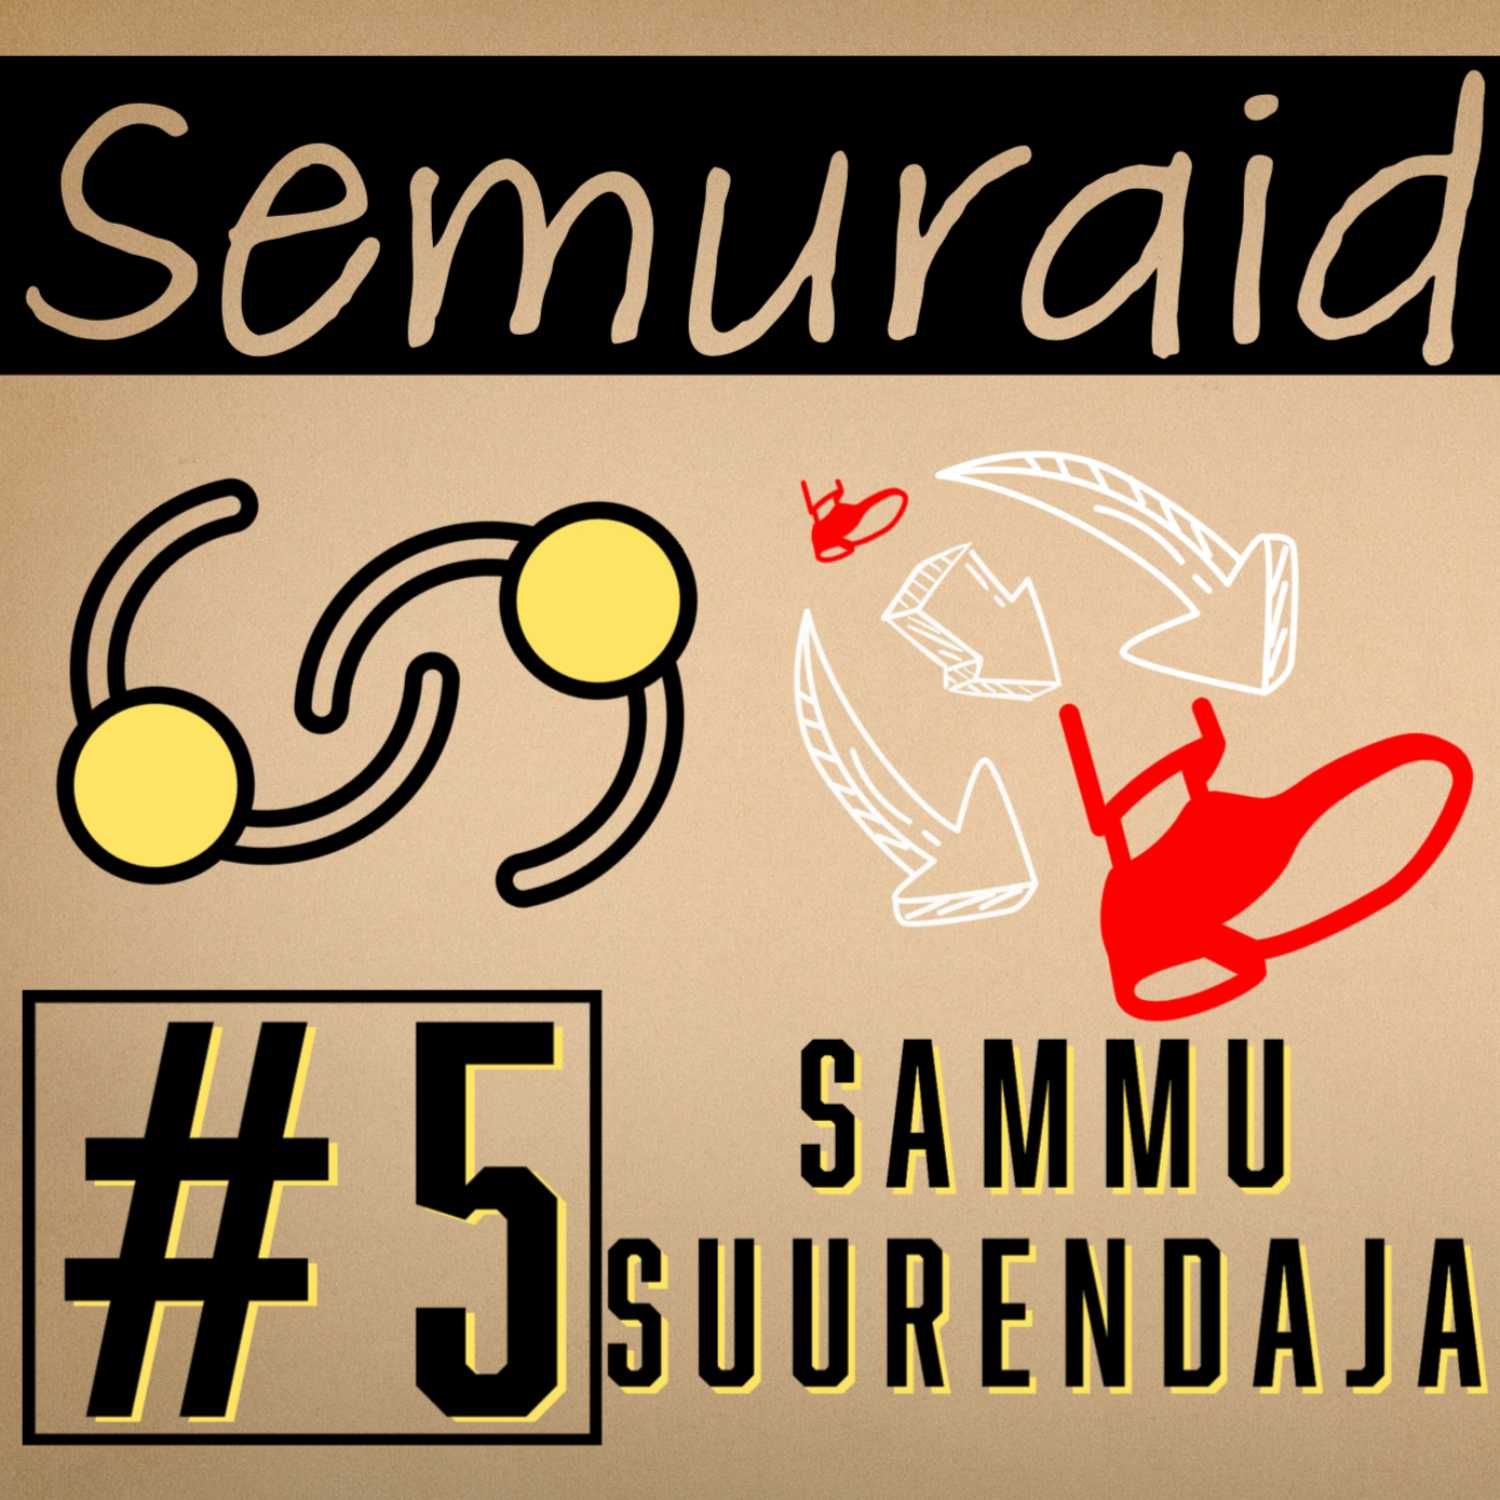 Semuraid #5 – Sammu Suurendaja